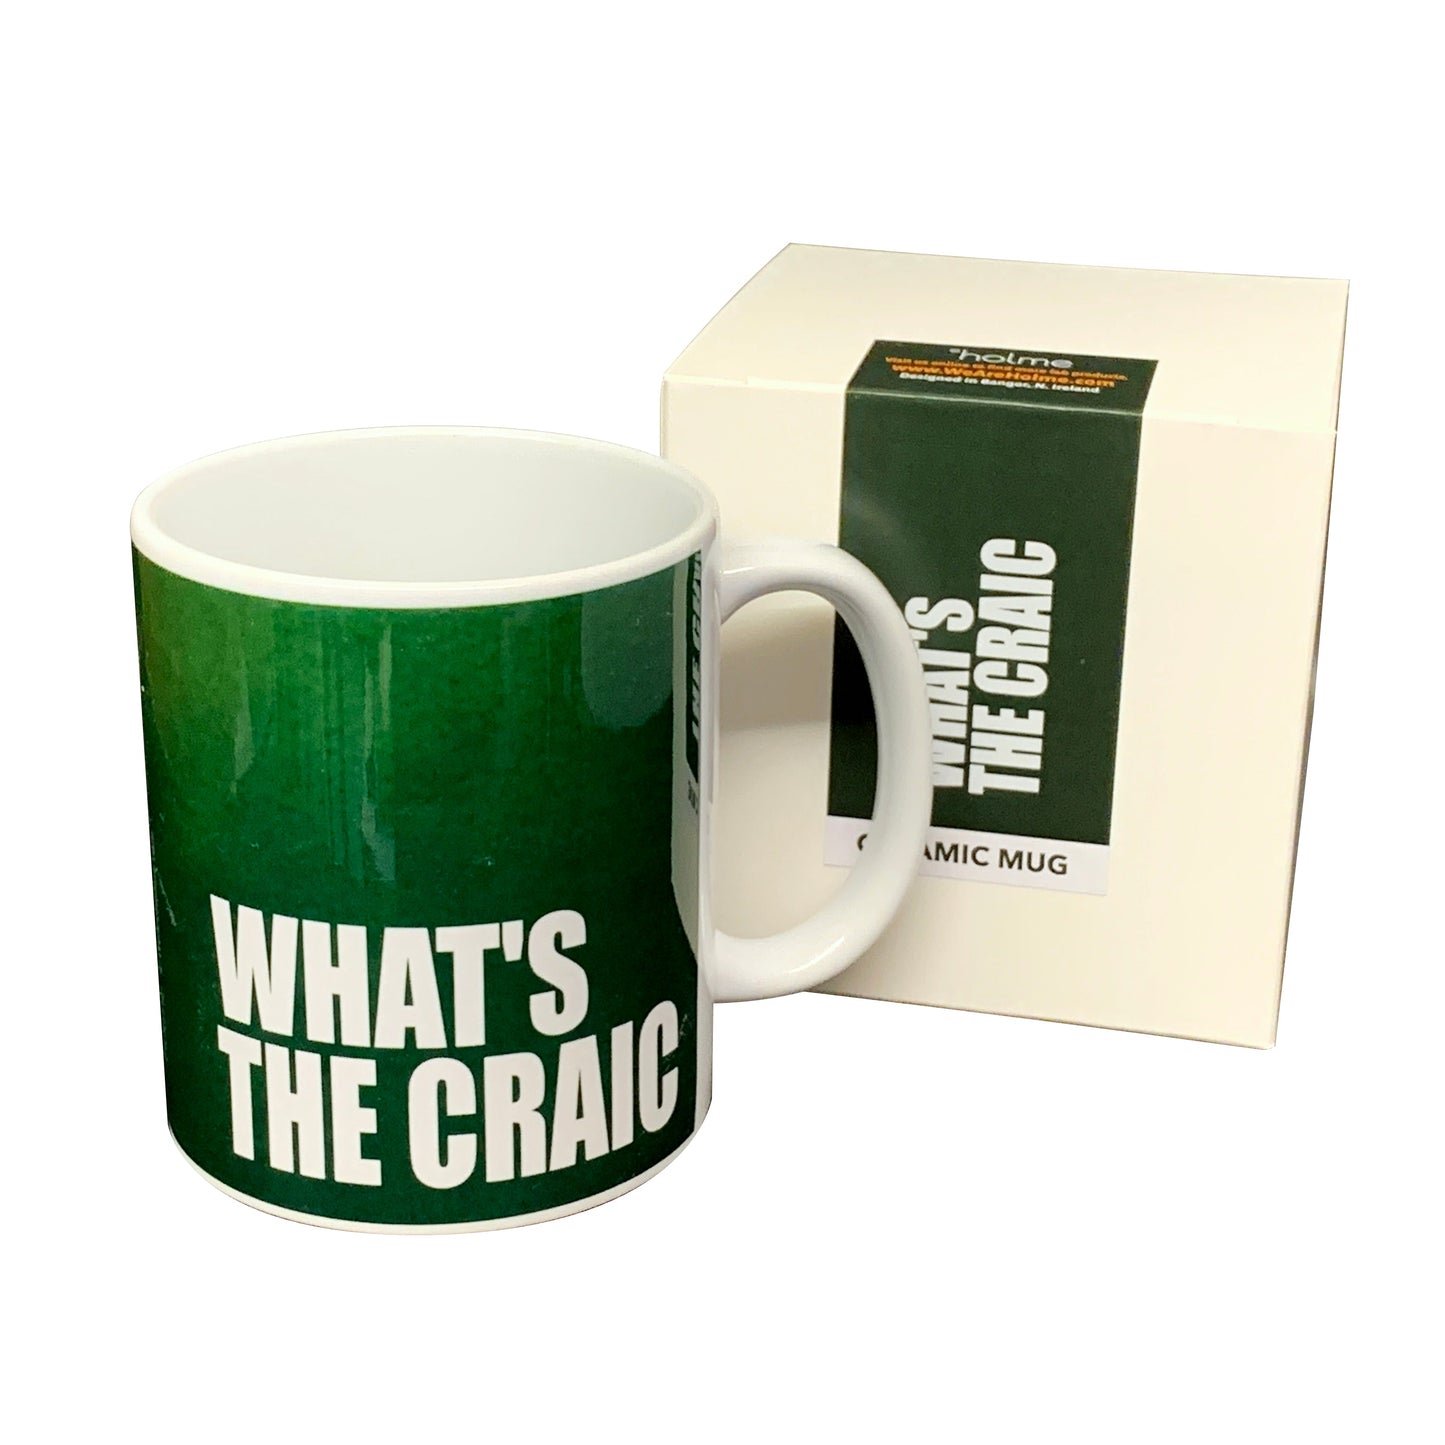 Northern Ireland Slang Mug - What's The Craic